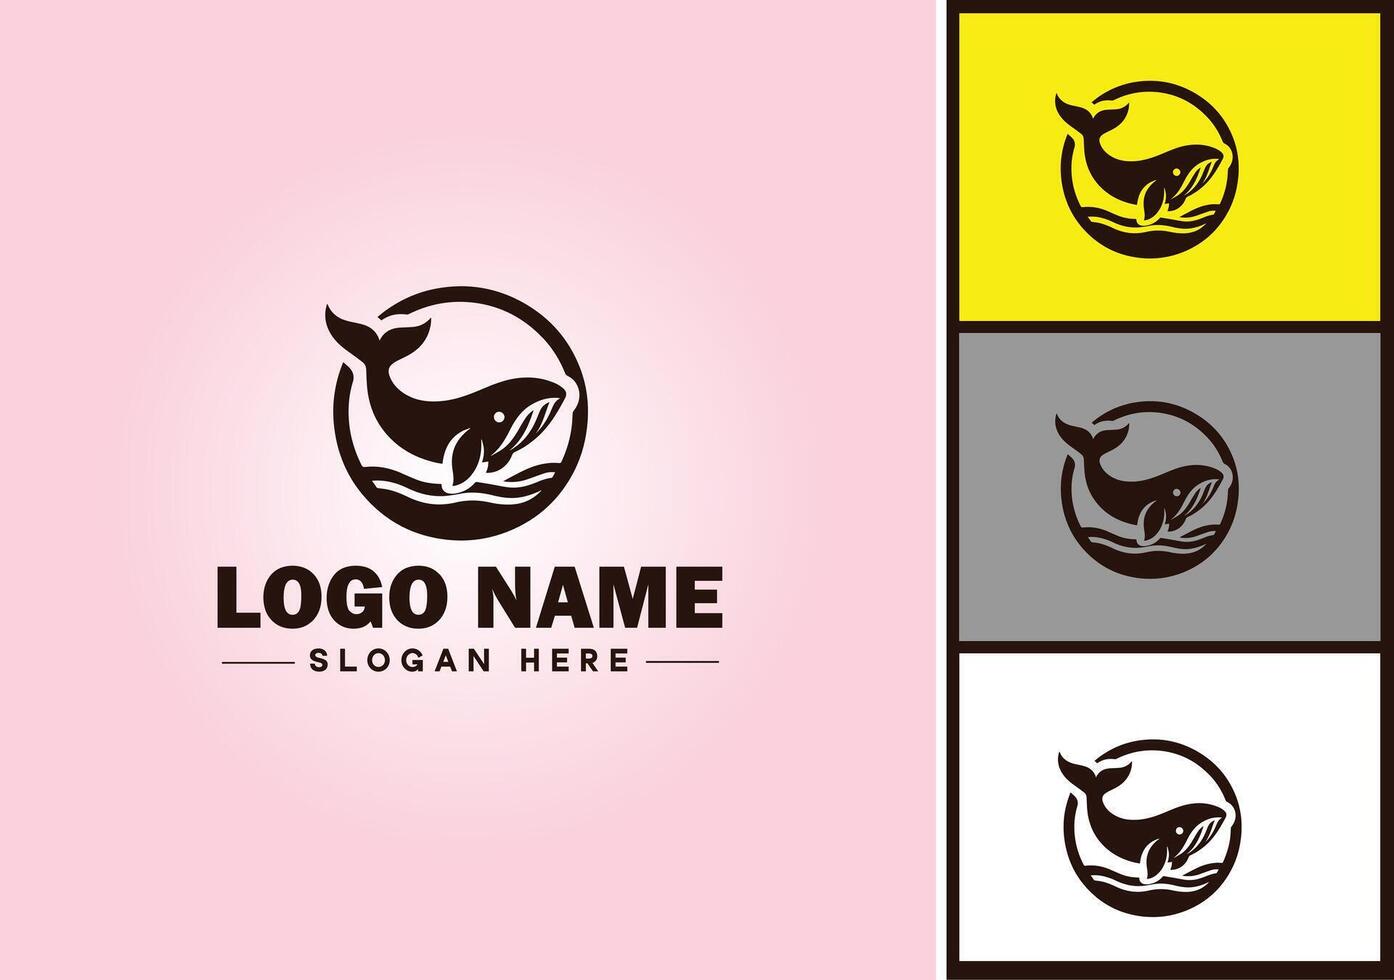 balena icona logo vettore arte grafica per attività commerciale marca icona balena pesce oceano logo modello